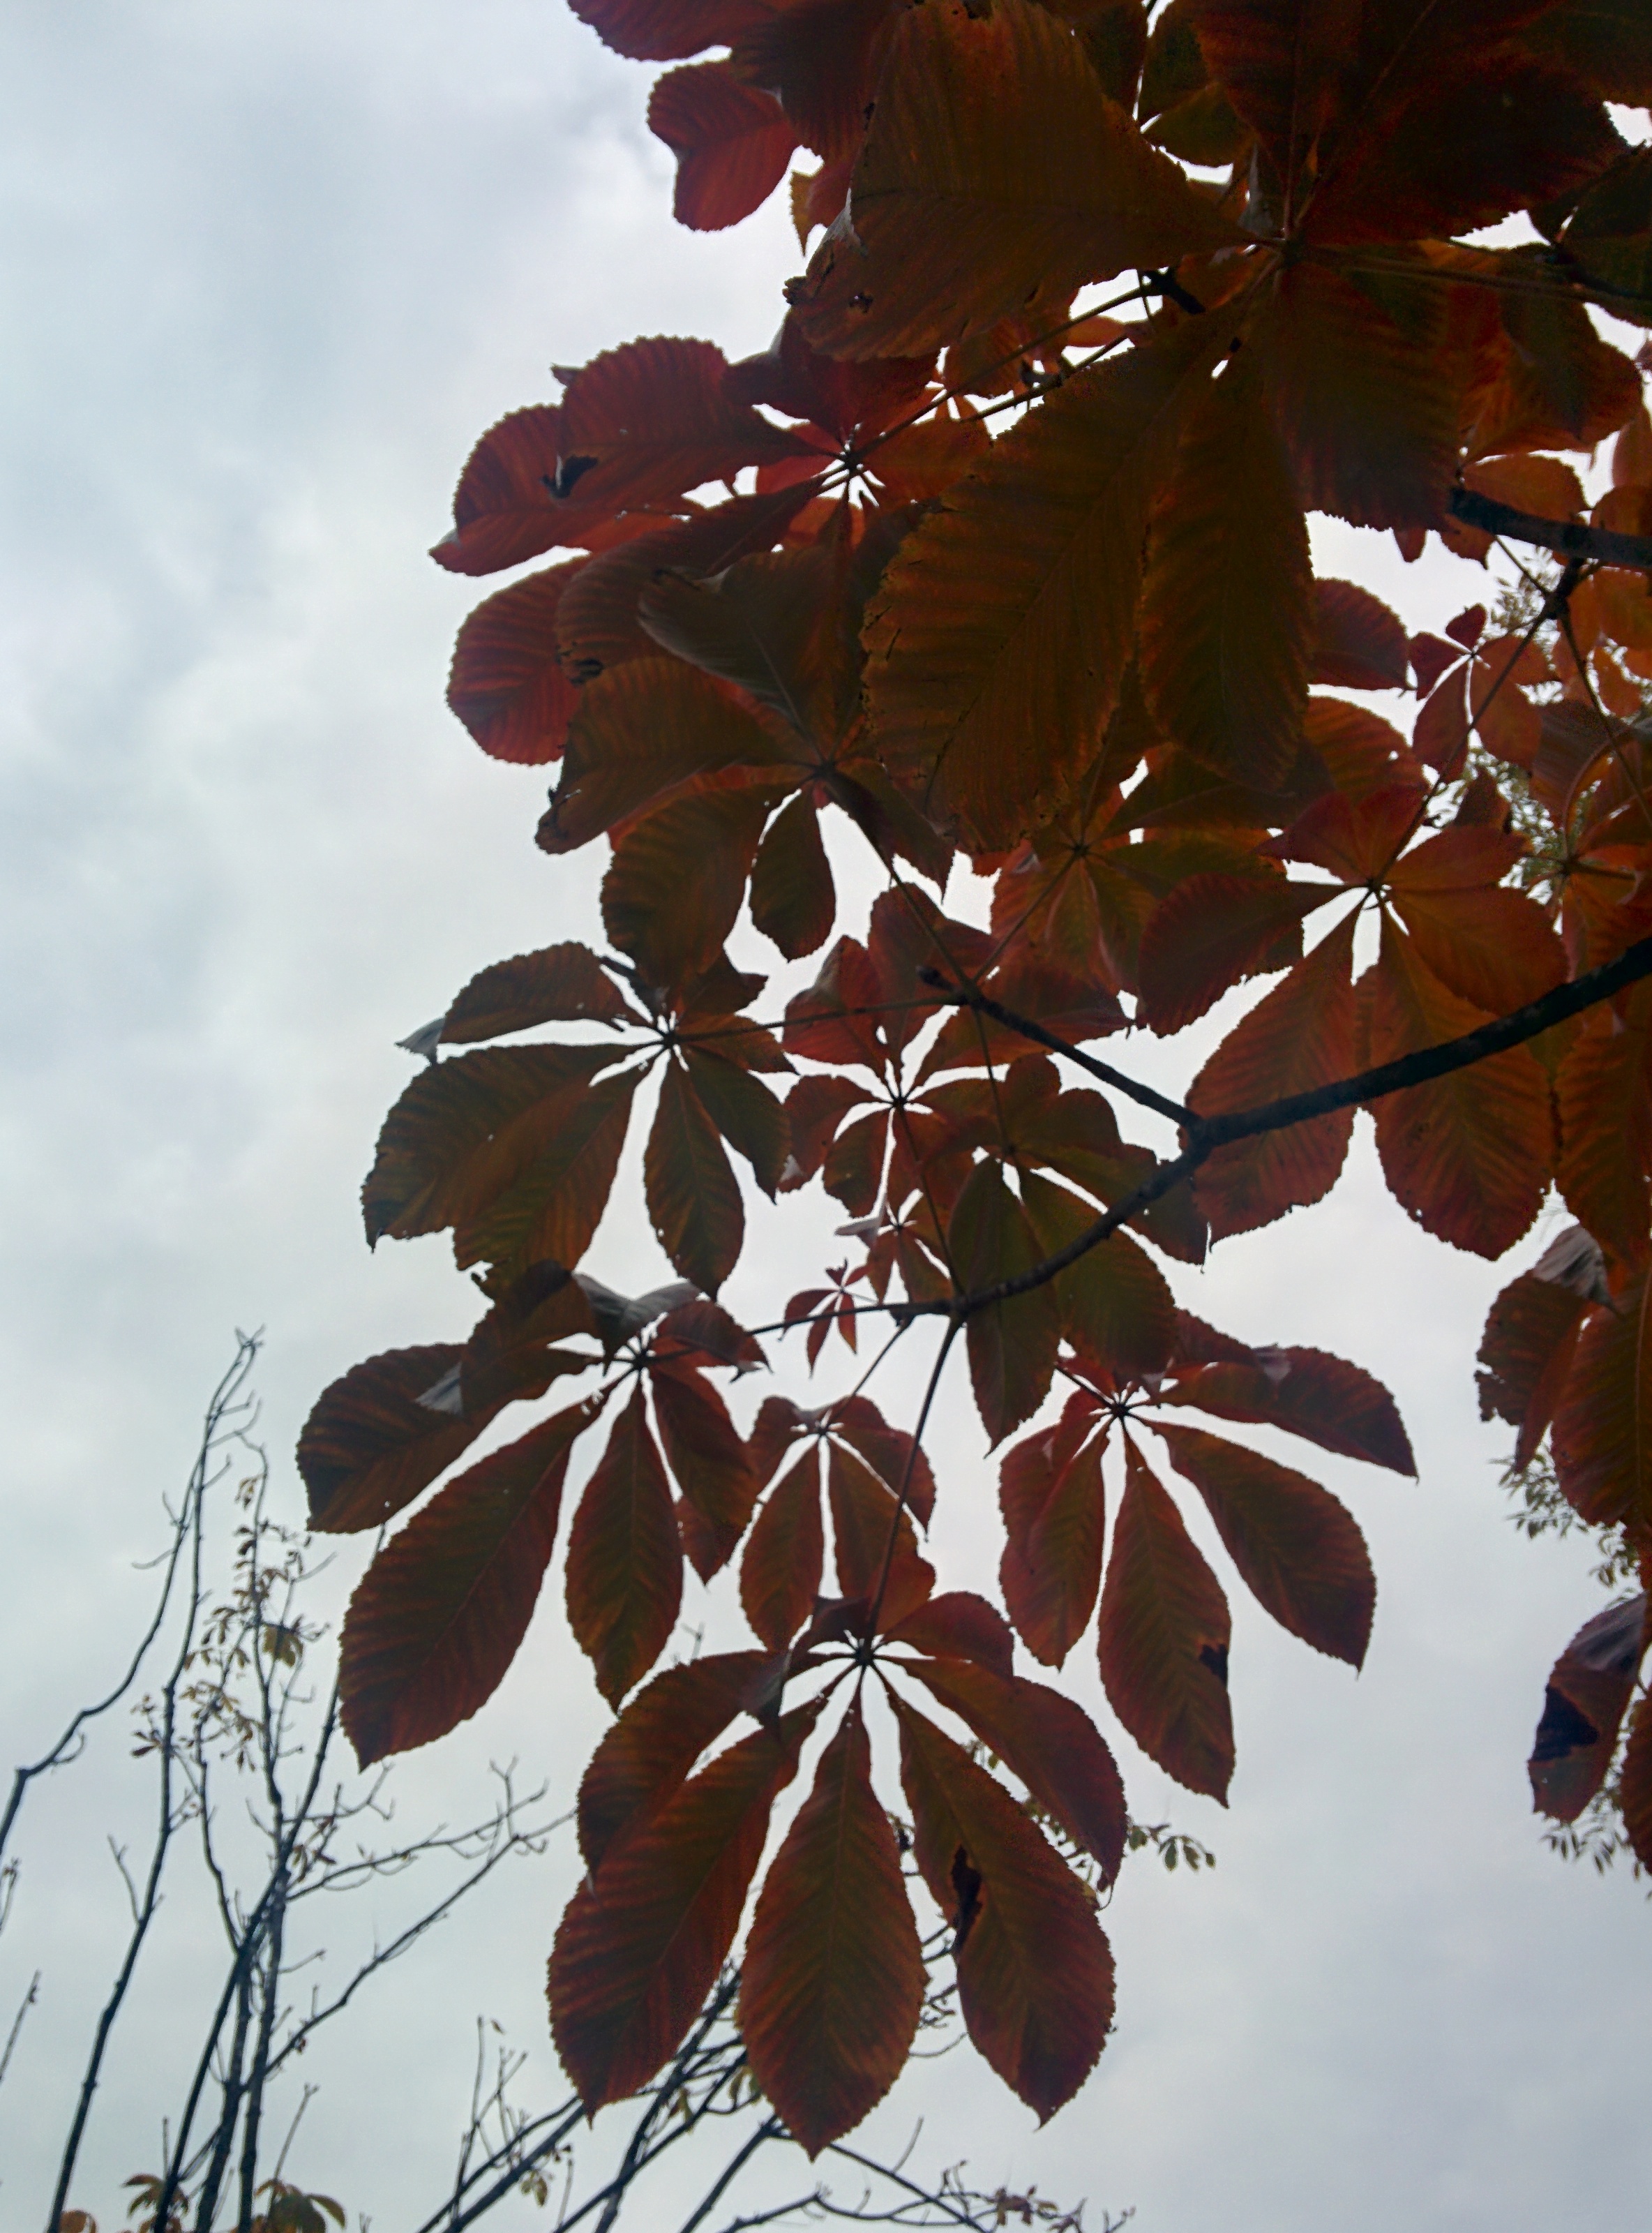 IMG_20151106_144139.jpg 일곱개 잎이 모여나는 칠엽수(七葉樹)